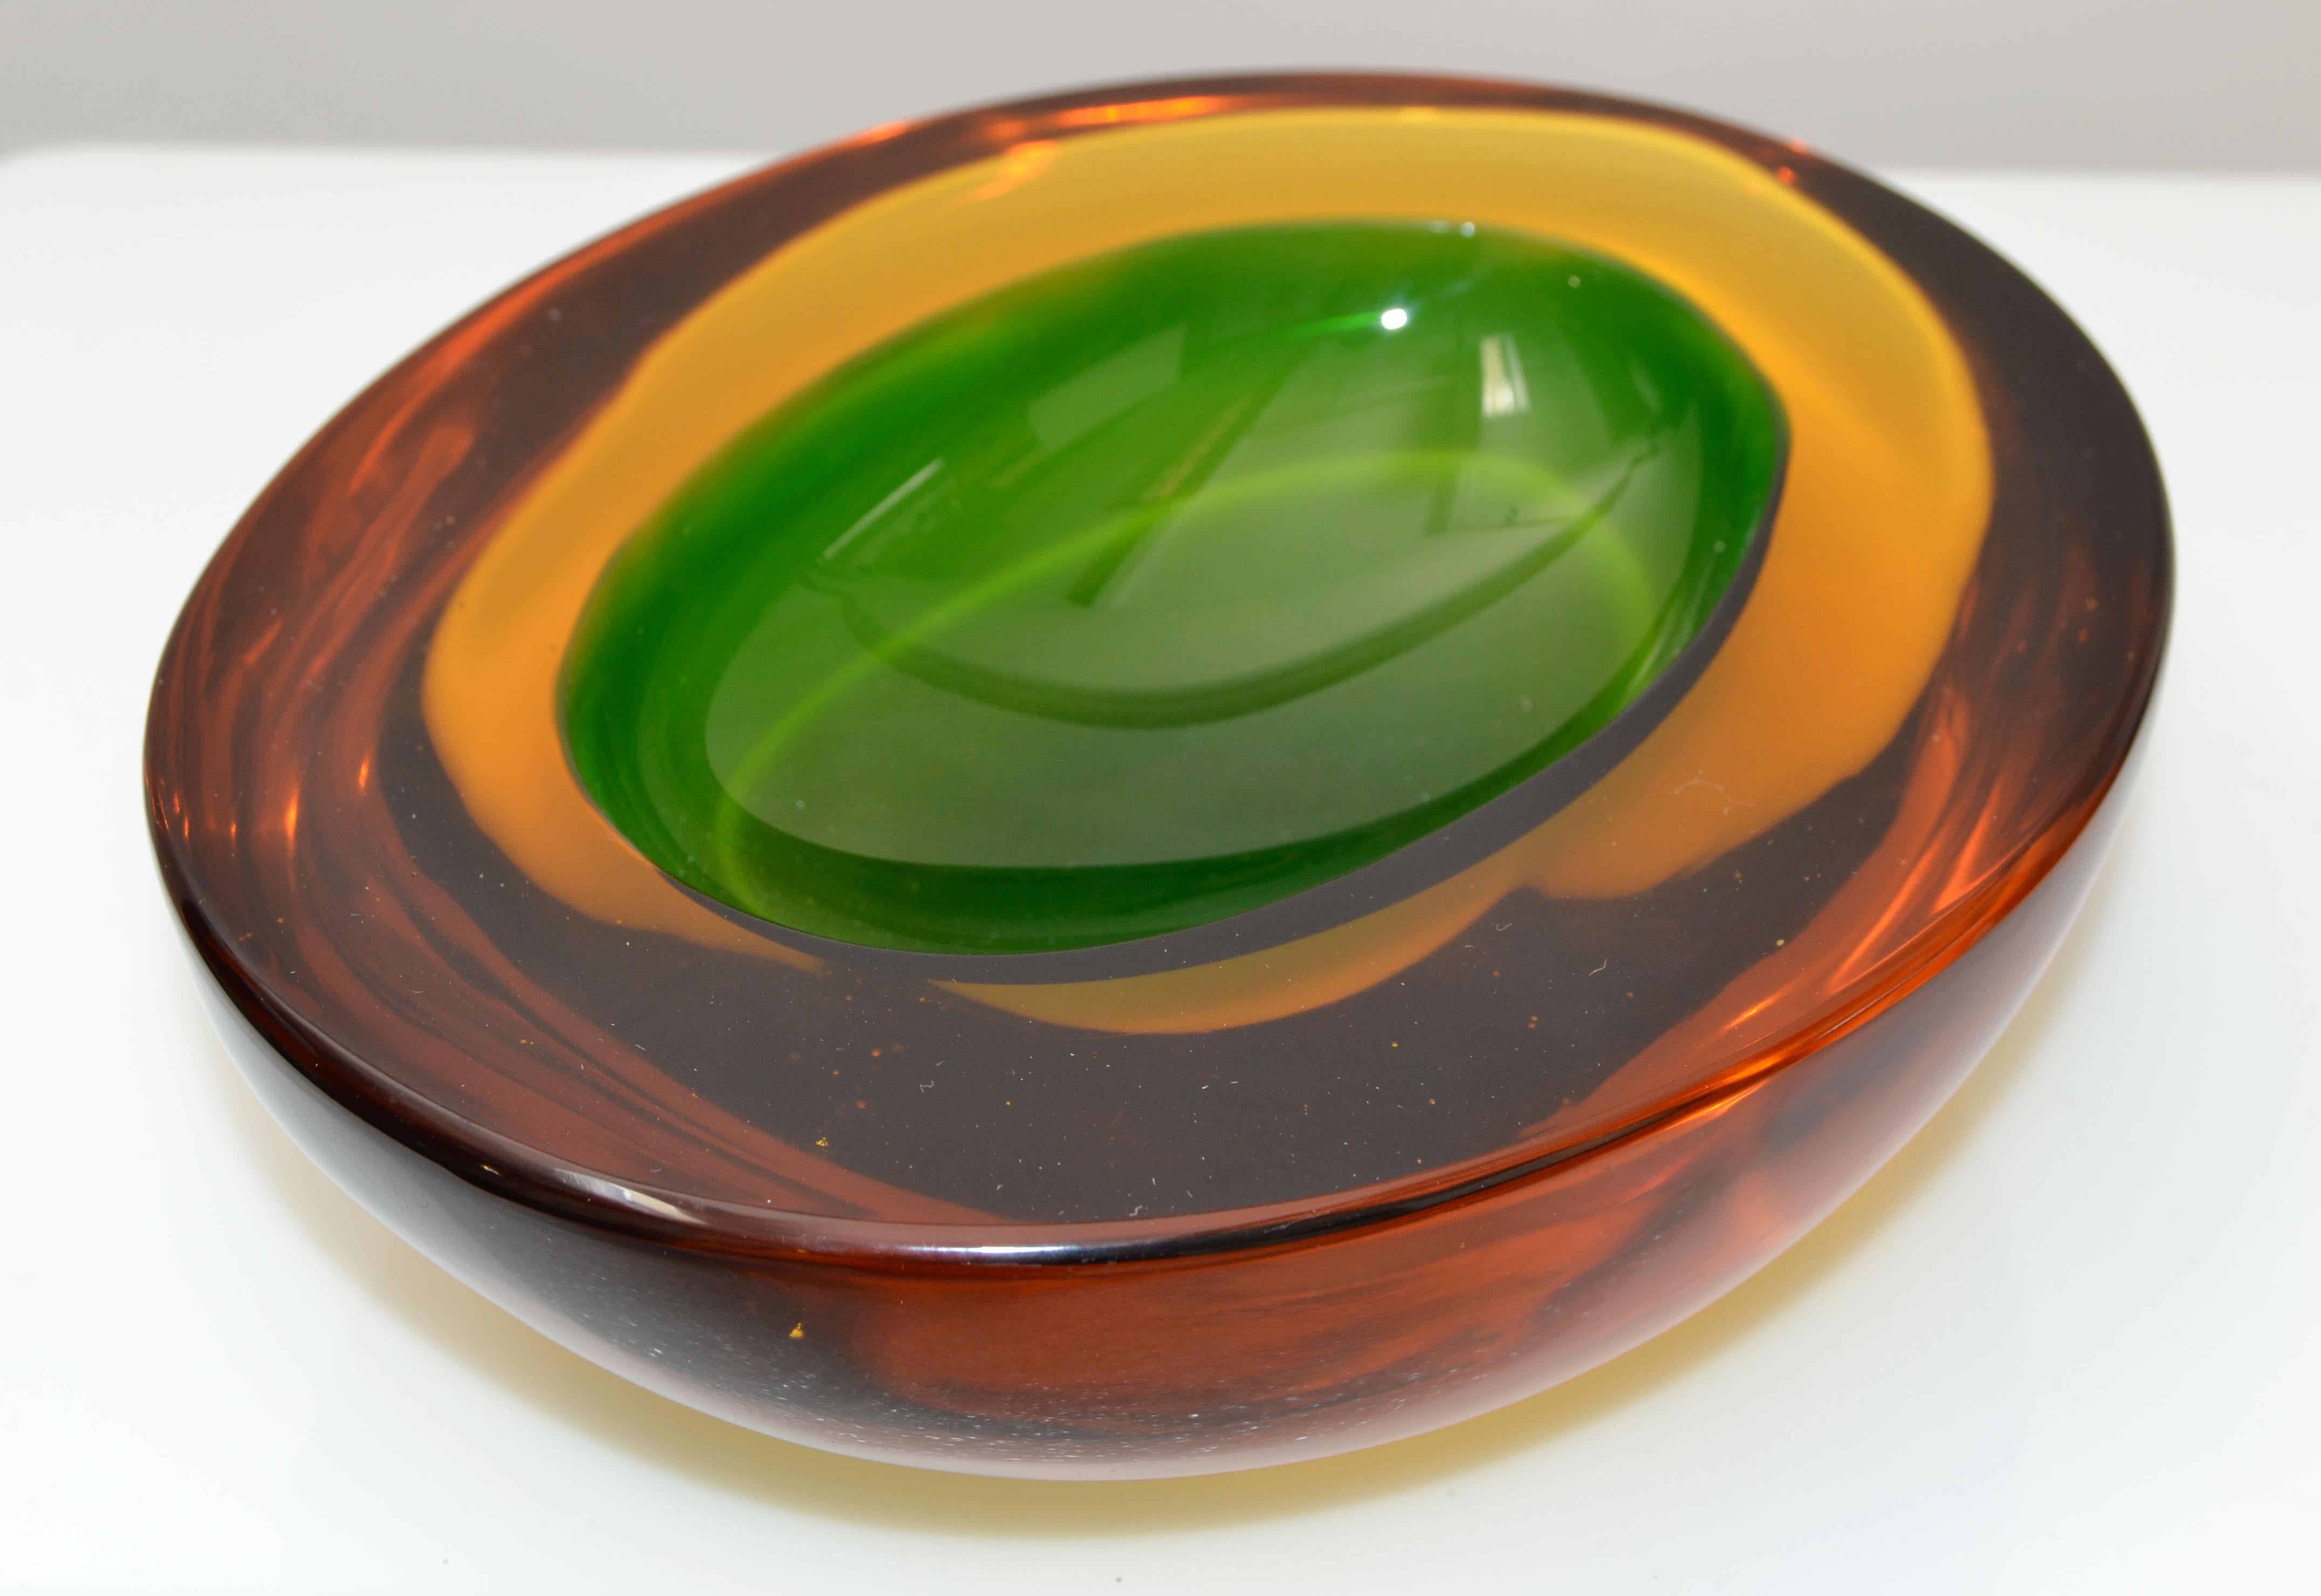 Coupe en verre d'art de Murano de style moderne du milieu du siècle, rouge, orange et vert, en verre soufflé, fabriquée en Italie.
Bol en verre lourd avec des détails remarquables.